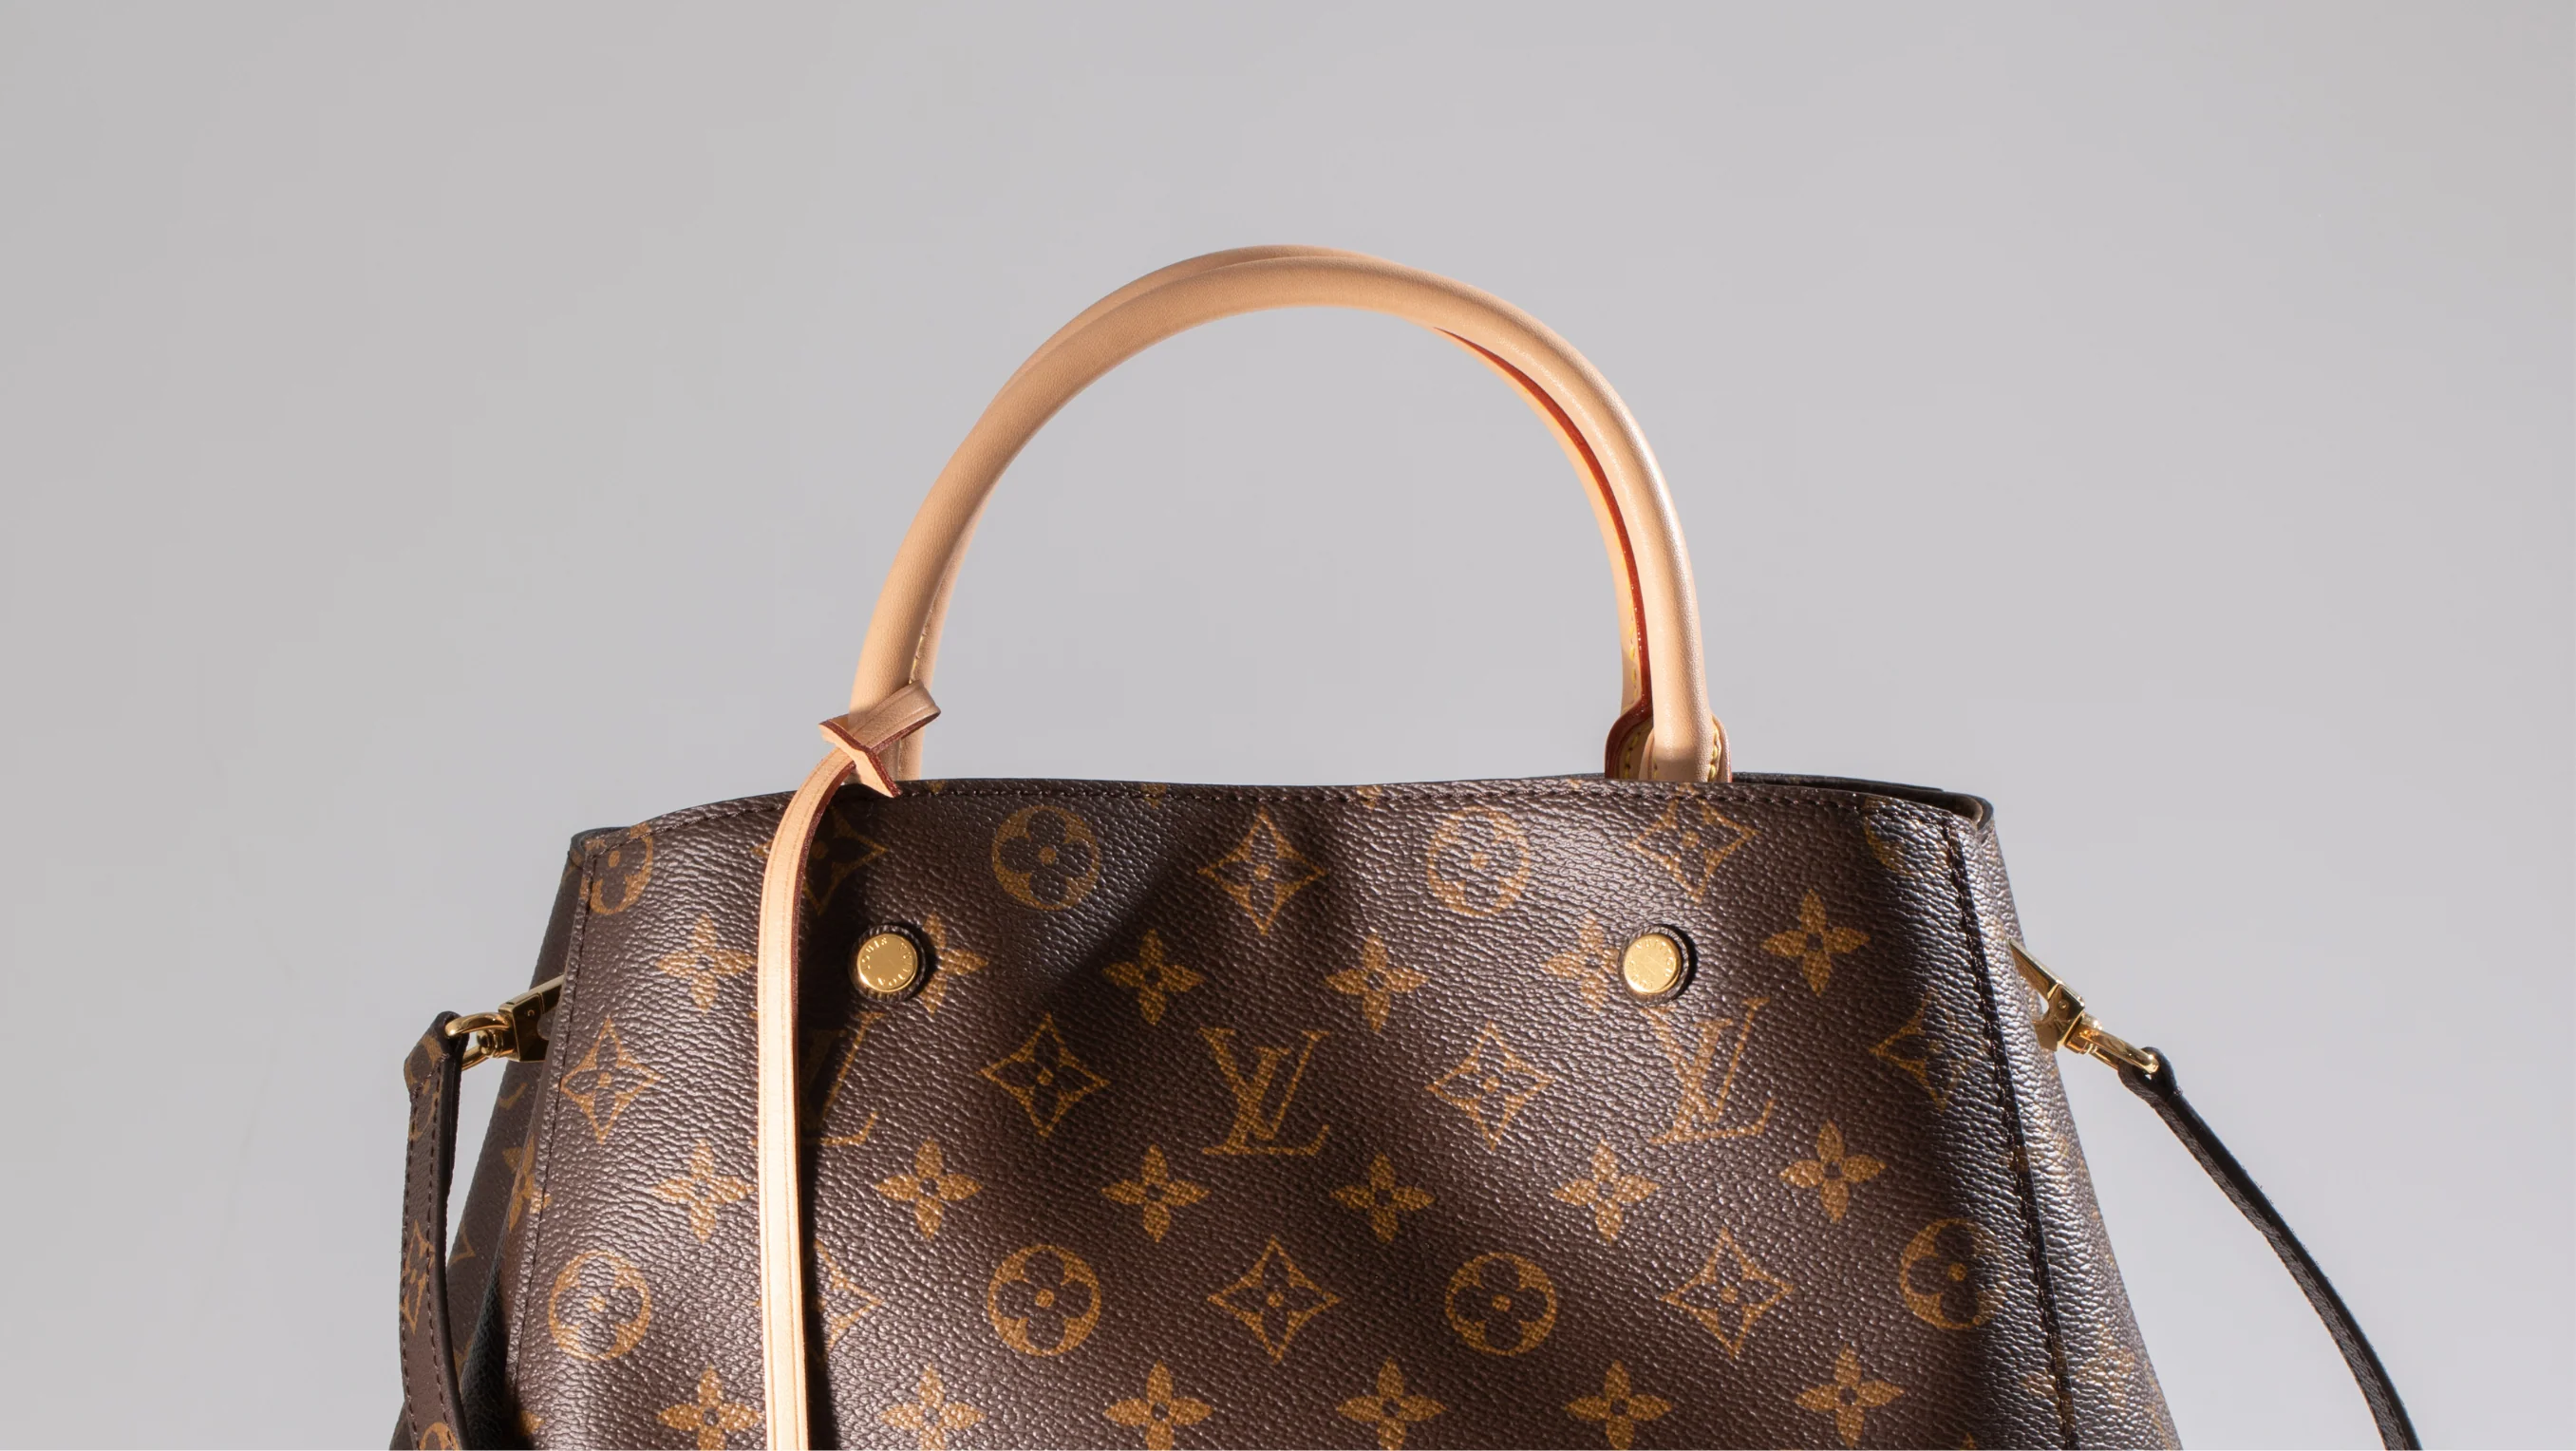 SAVE THIS - Louis Vuitton Capucines bag review + size comparison